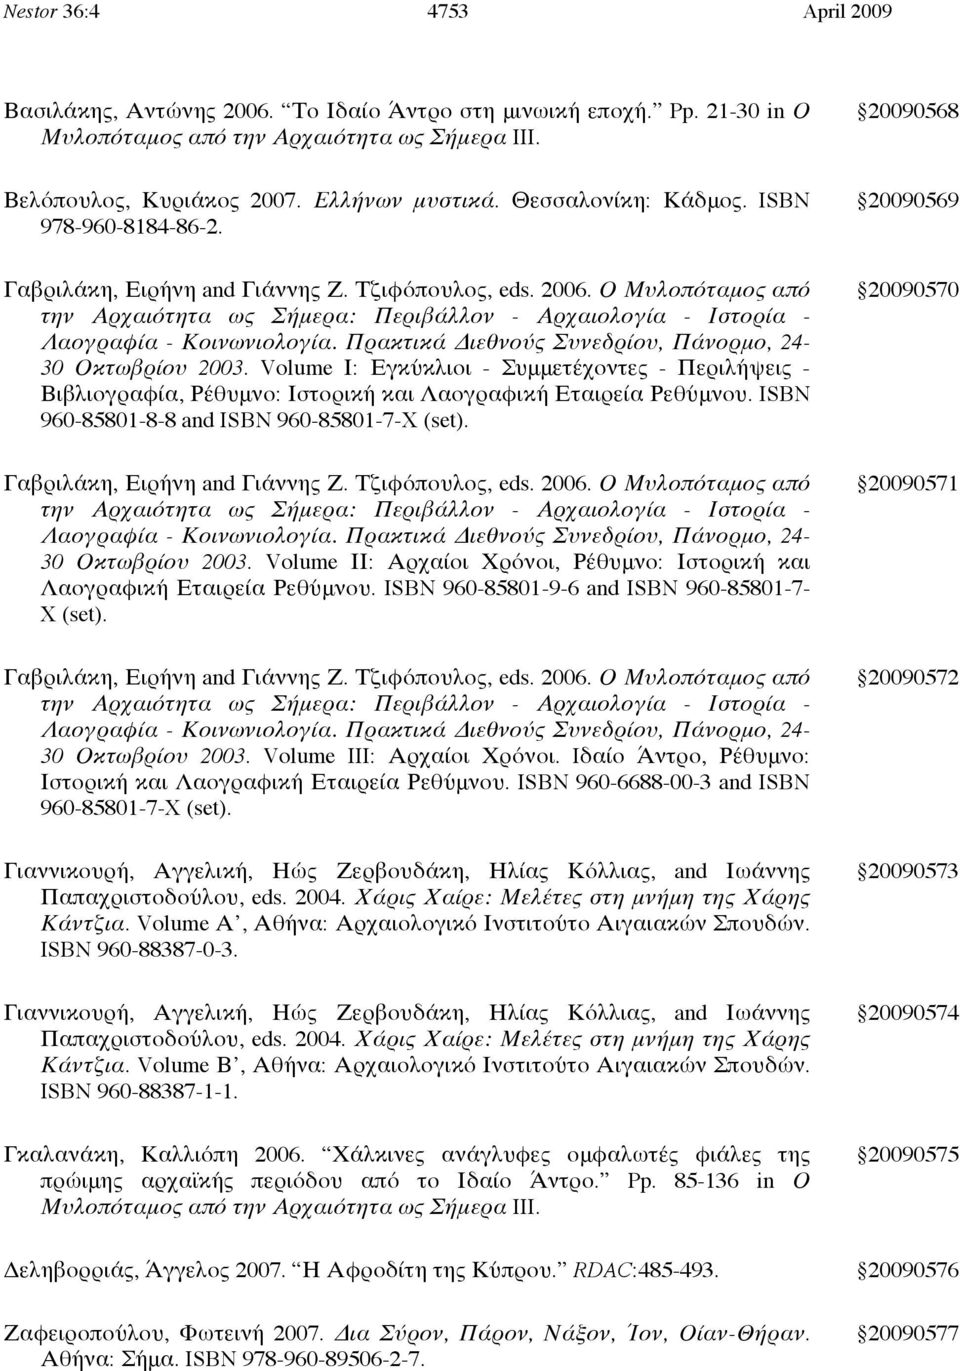 Ο Μυλοπόταμος από την Αρχαιότητα ως Σήμερα: Περιβάλλον - Αρχαιολογία - Ιστορία - Λαογραφία - Κοινωνιολογία. Πρακτικά Διεθνούς Συνεδρίου, Πάνορμο, 24-30 Οκτωβρίου 2003.